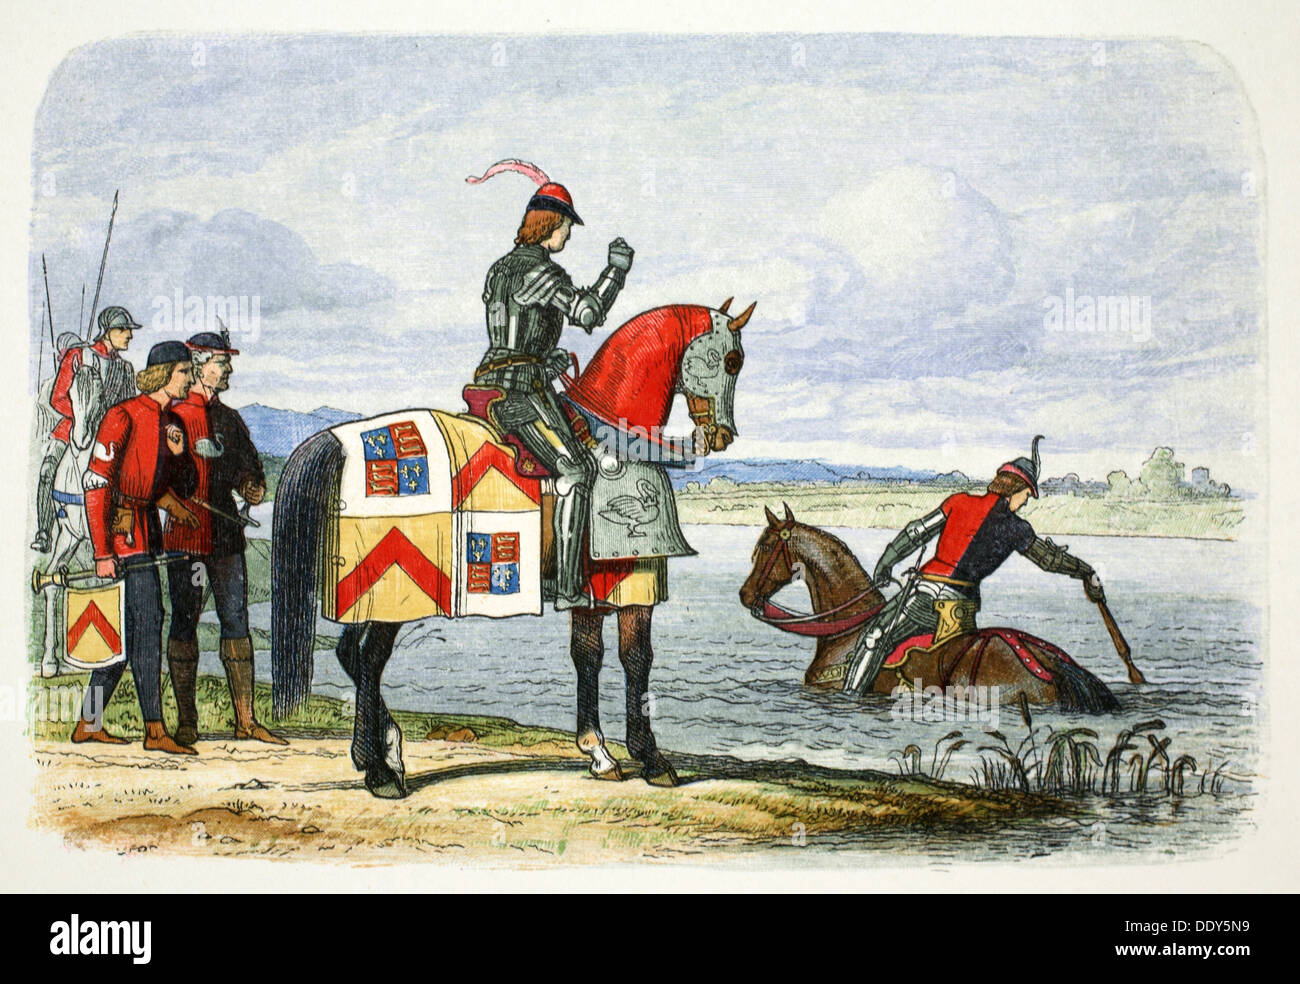 El duque de Buckingham busca el Severn intransitable, 1483 (1864). Artista: James William Edmund Doyle Foto de stock